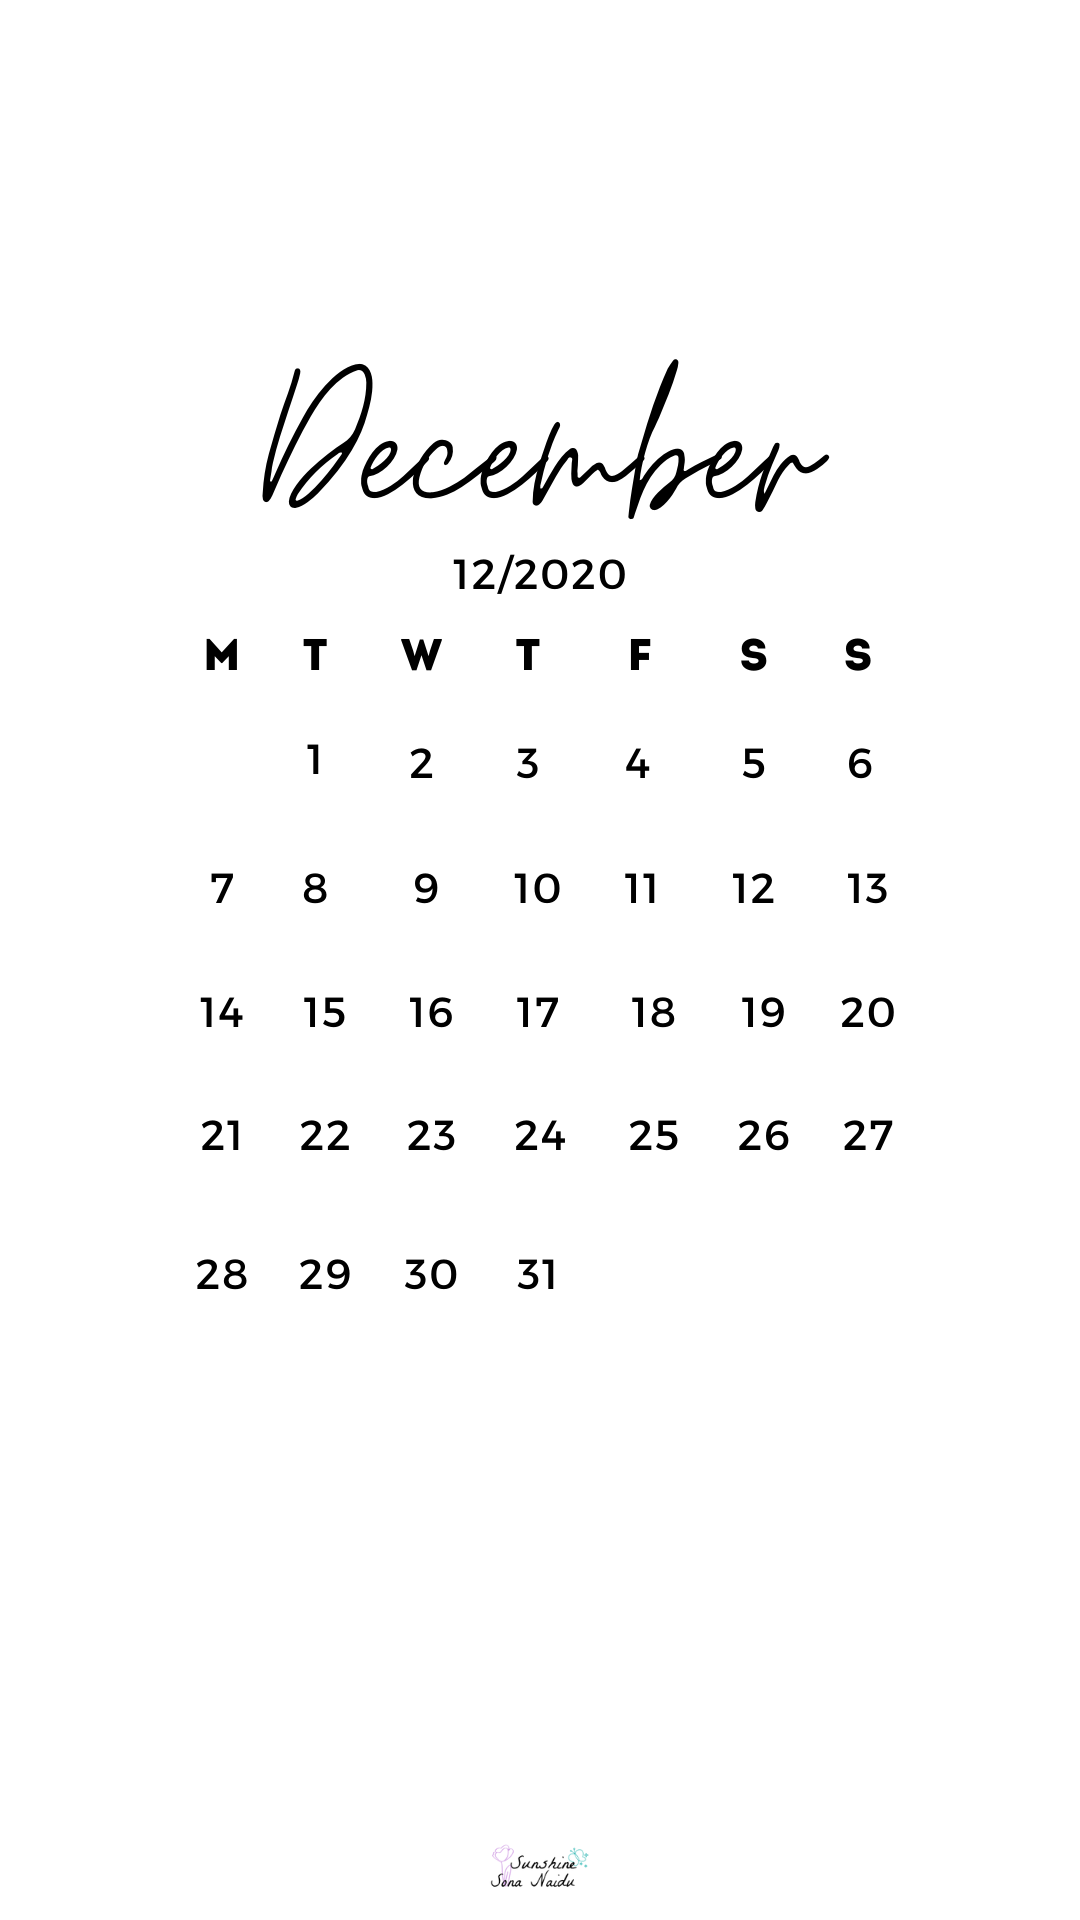 December 2020 wallpaper. December wallpaper iphone, Calendar wallpaper, Cute christmas wallpaper